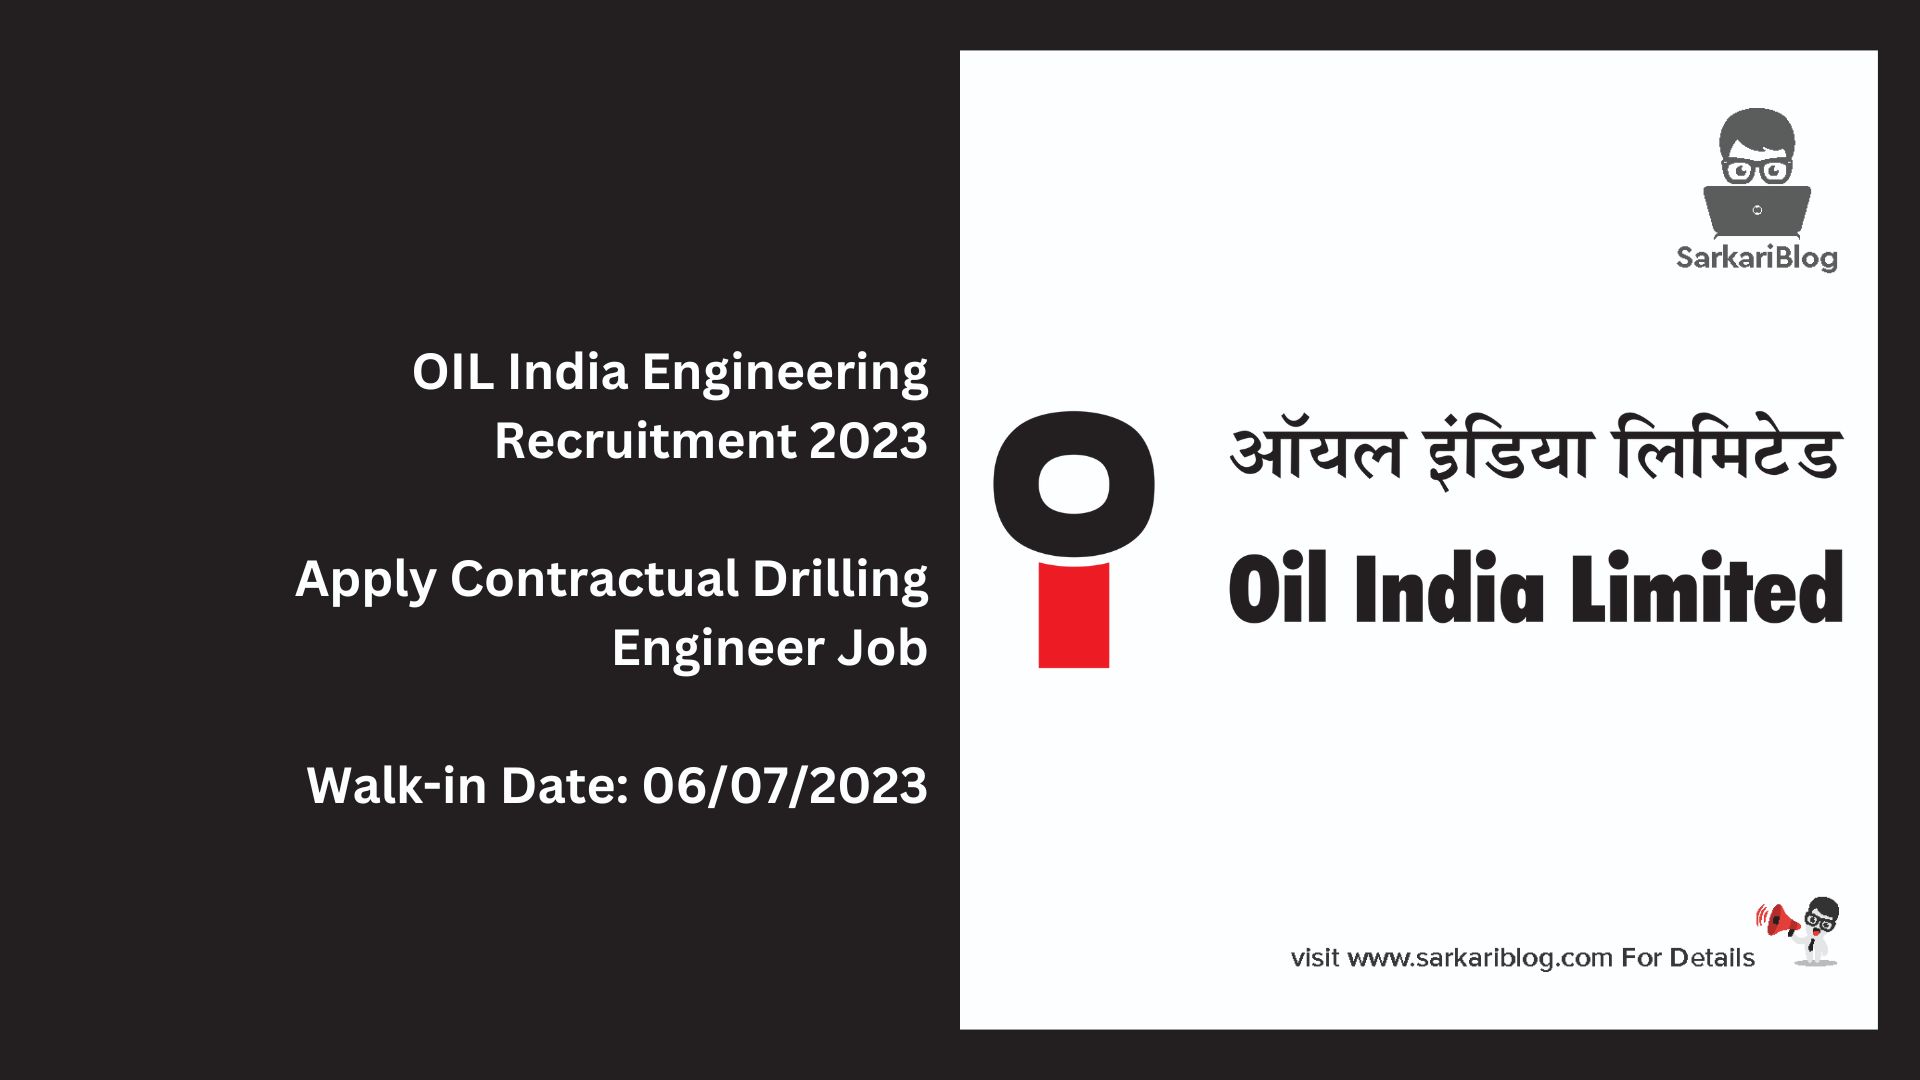 OIL India Engineering Recruitment 2023